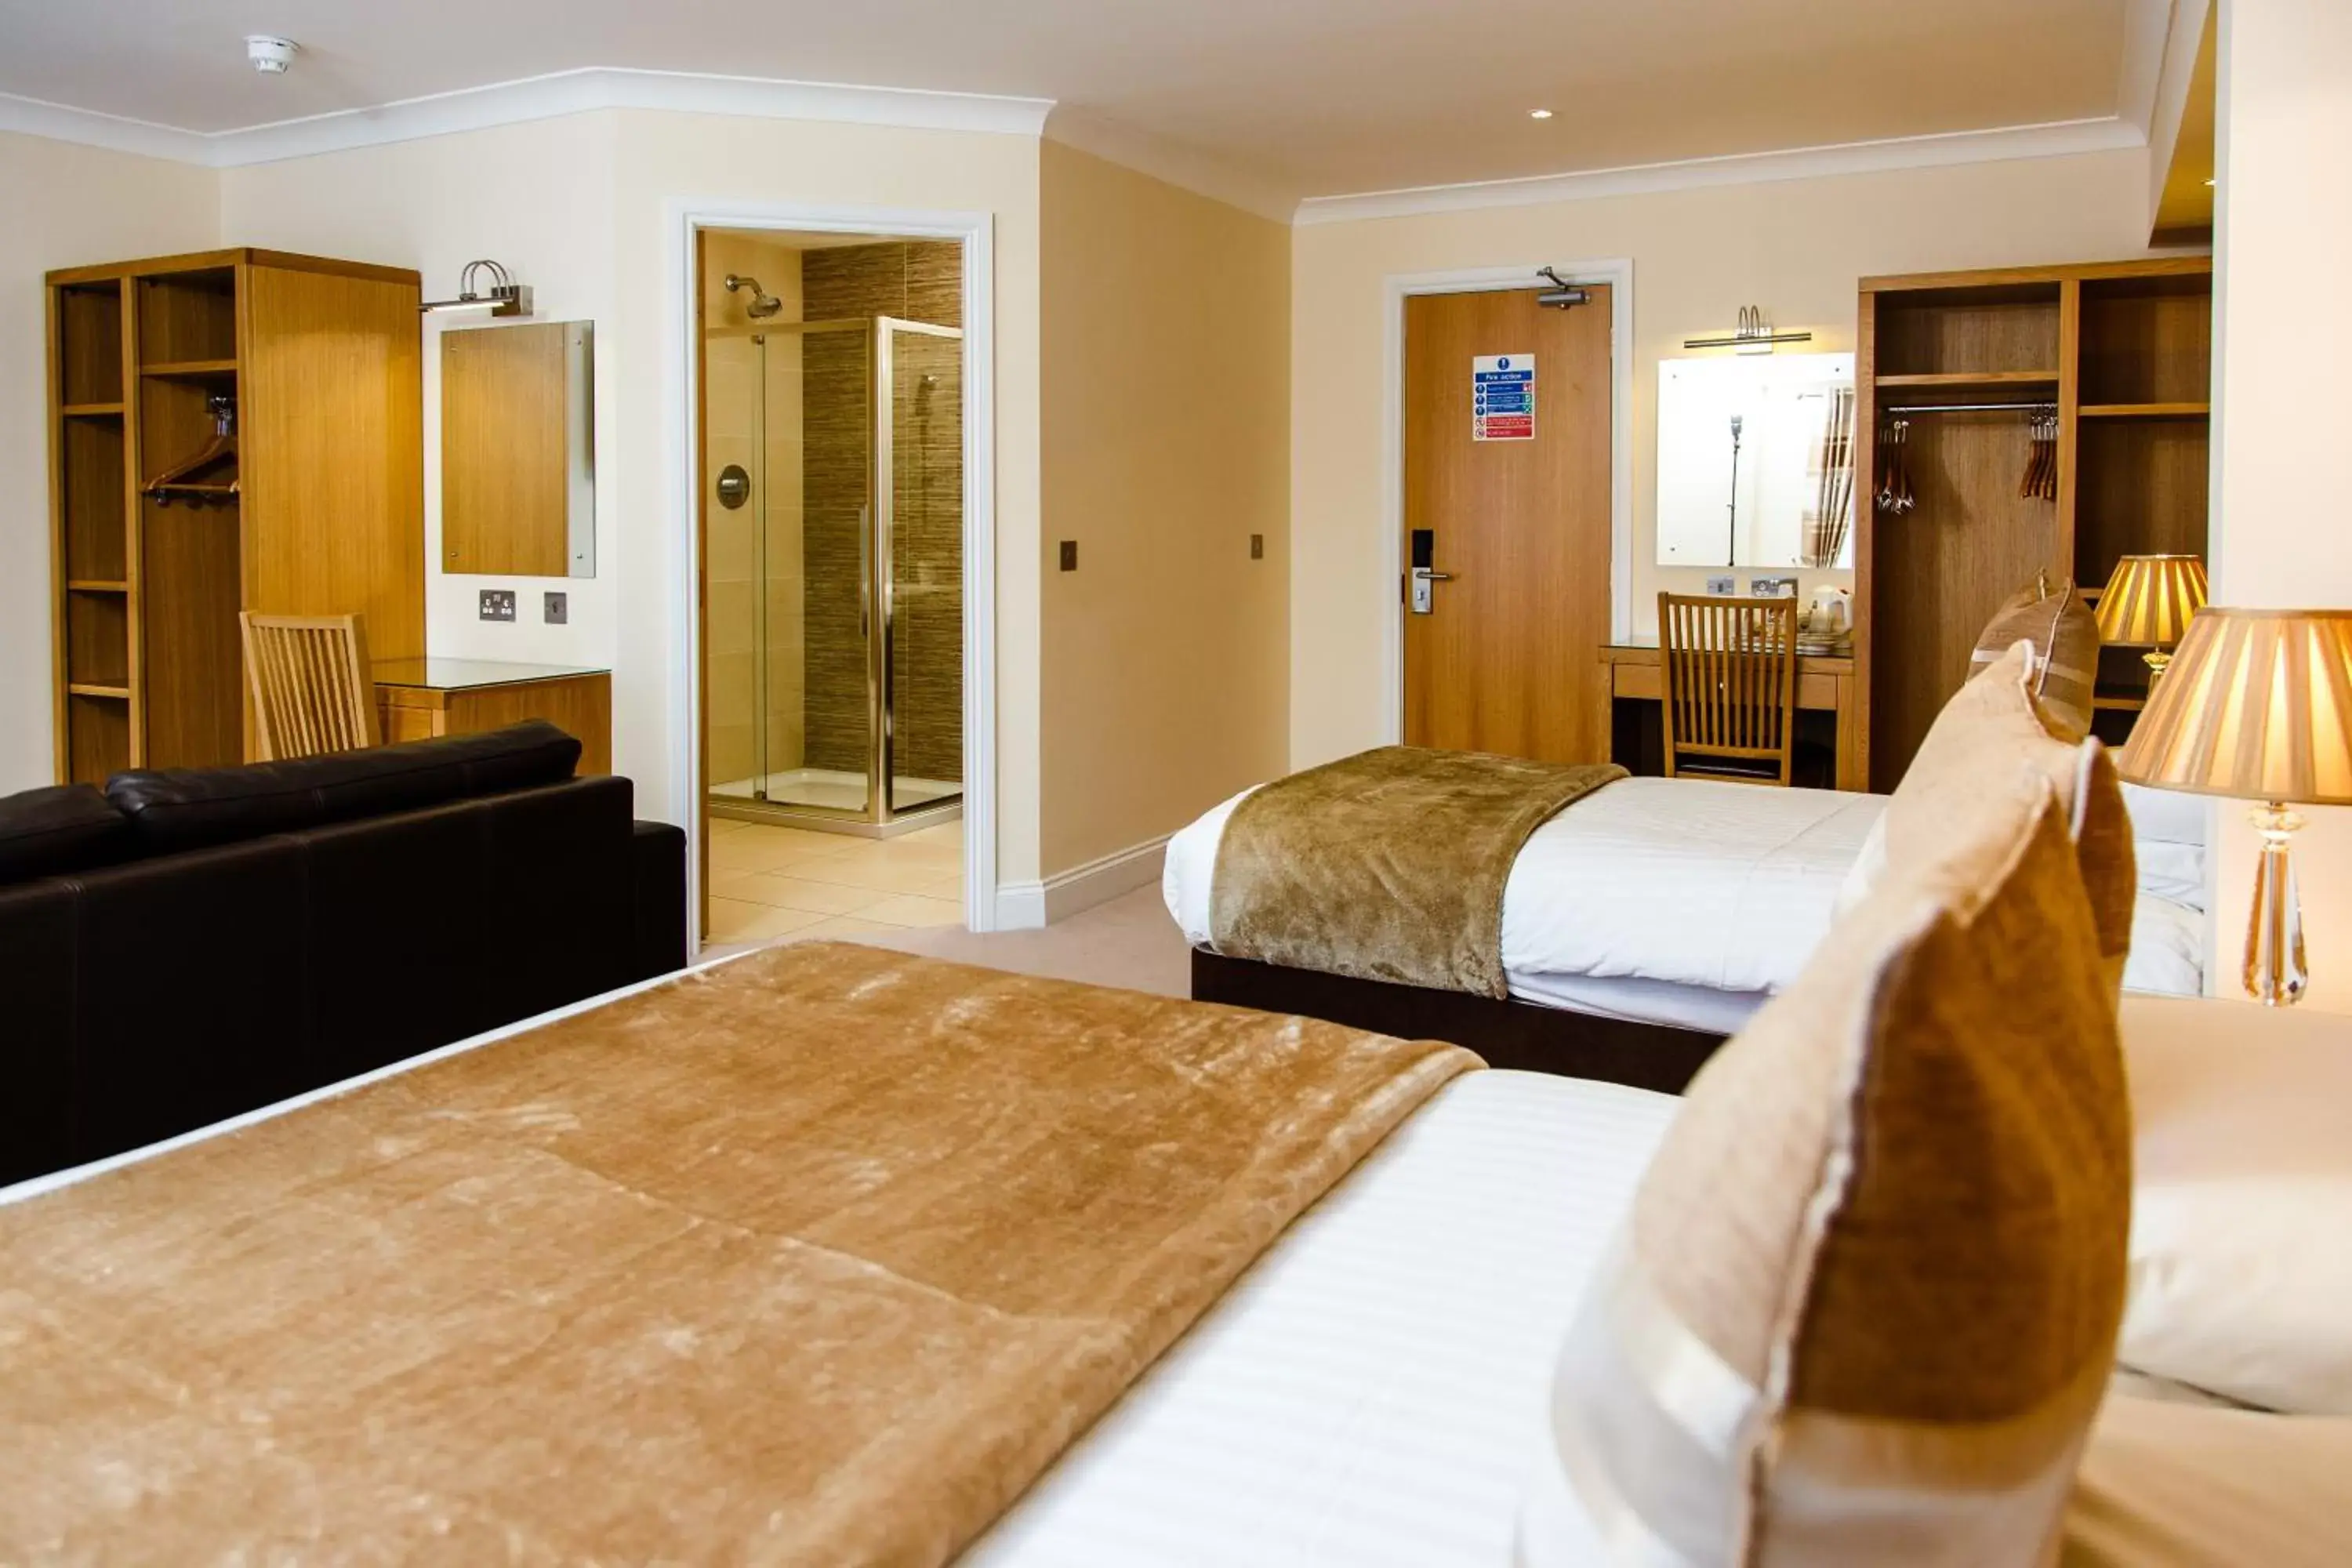 Bedroom, Room Photo in Adamson Hotel